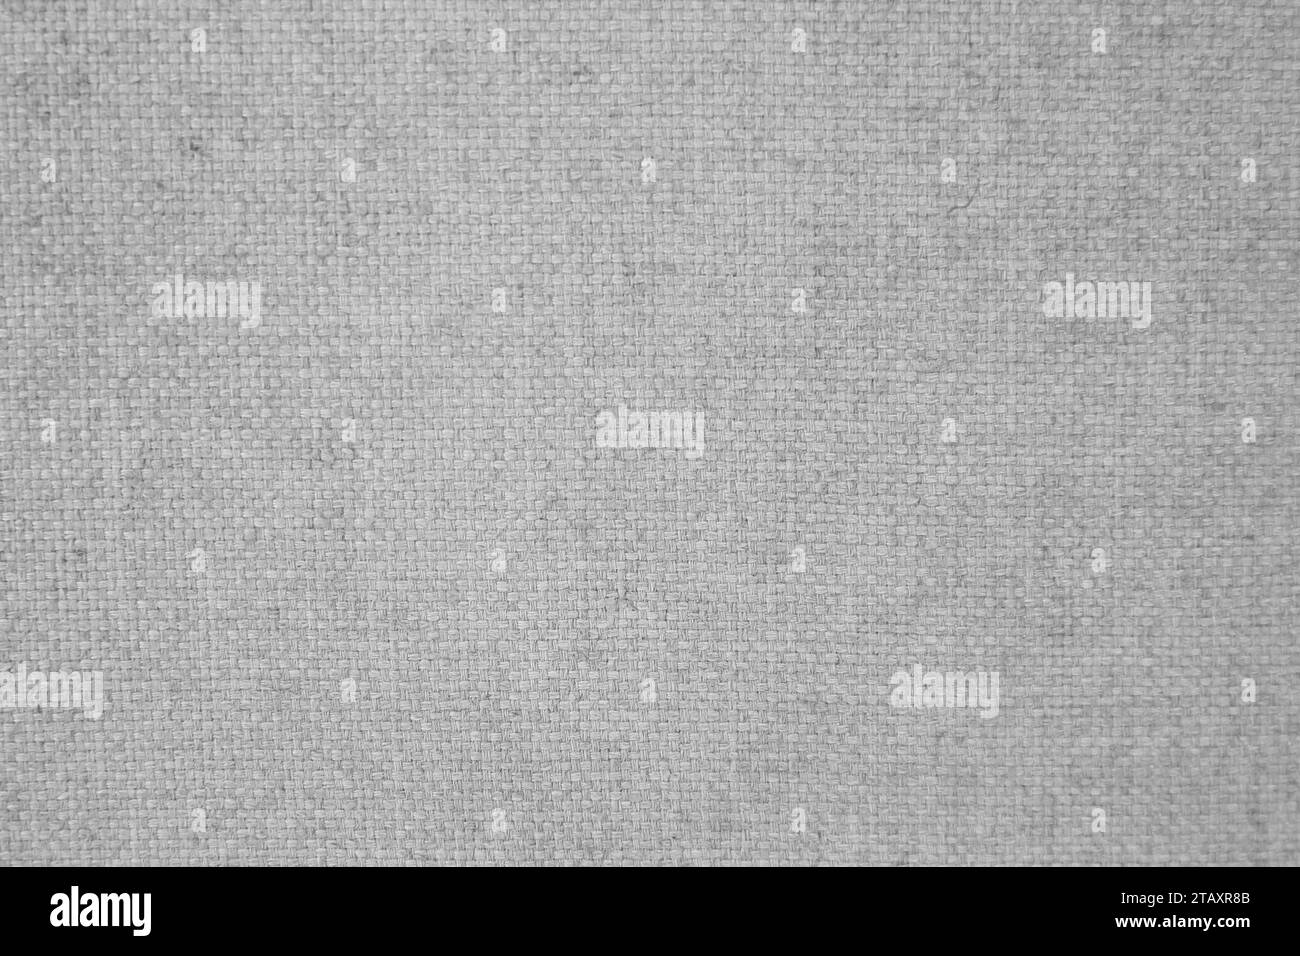 Questa immagine è caratterizzata da un tessuto grigio chiaro che è pesantemente stropicciato e sbiadito Foto Stock